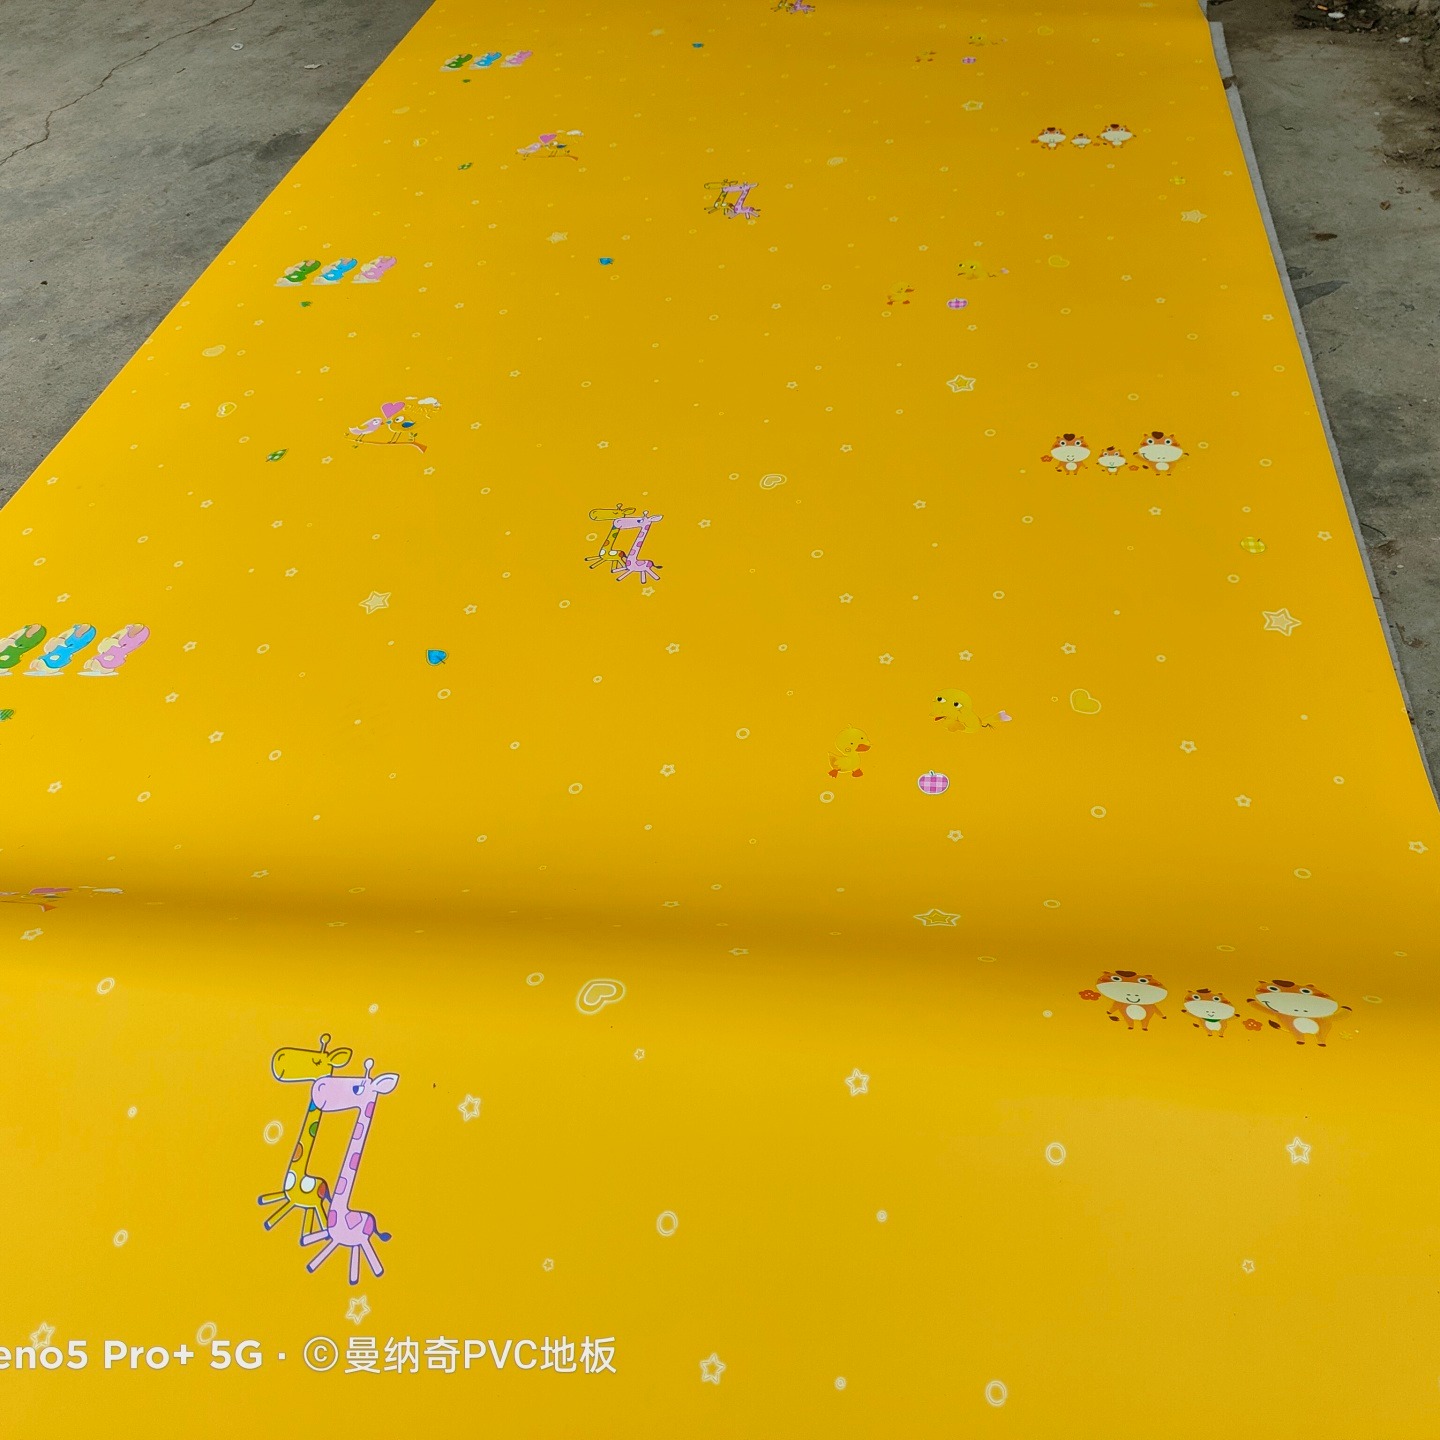 大关PVC塑胶地板 净化车间pvc塑胶地板 曼纳奇pvc塑胶地板 医用塑胶地板